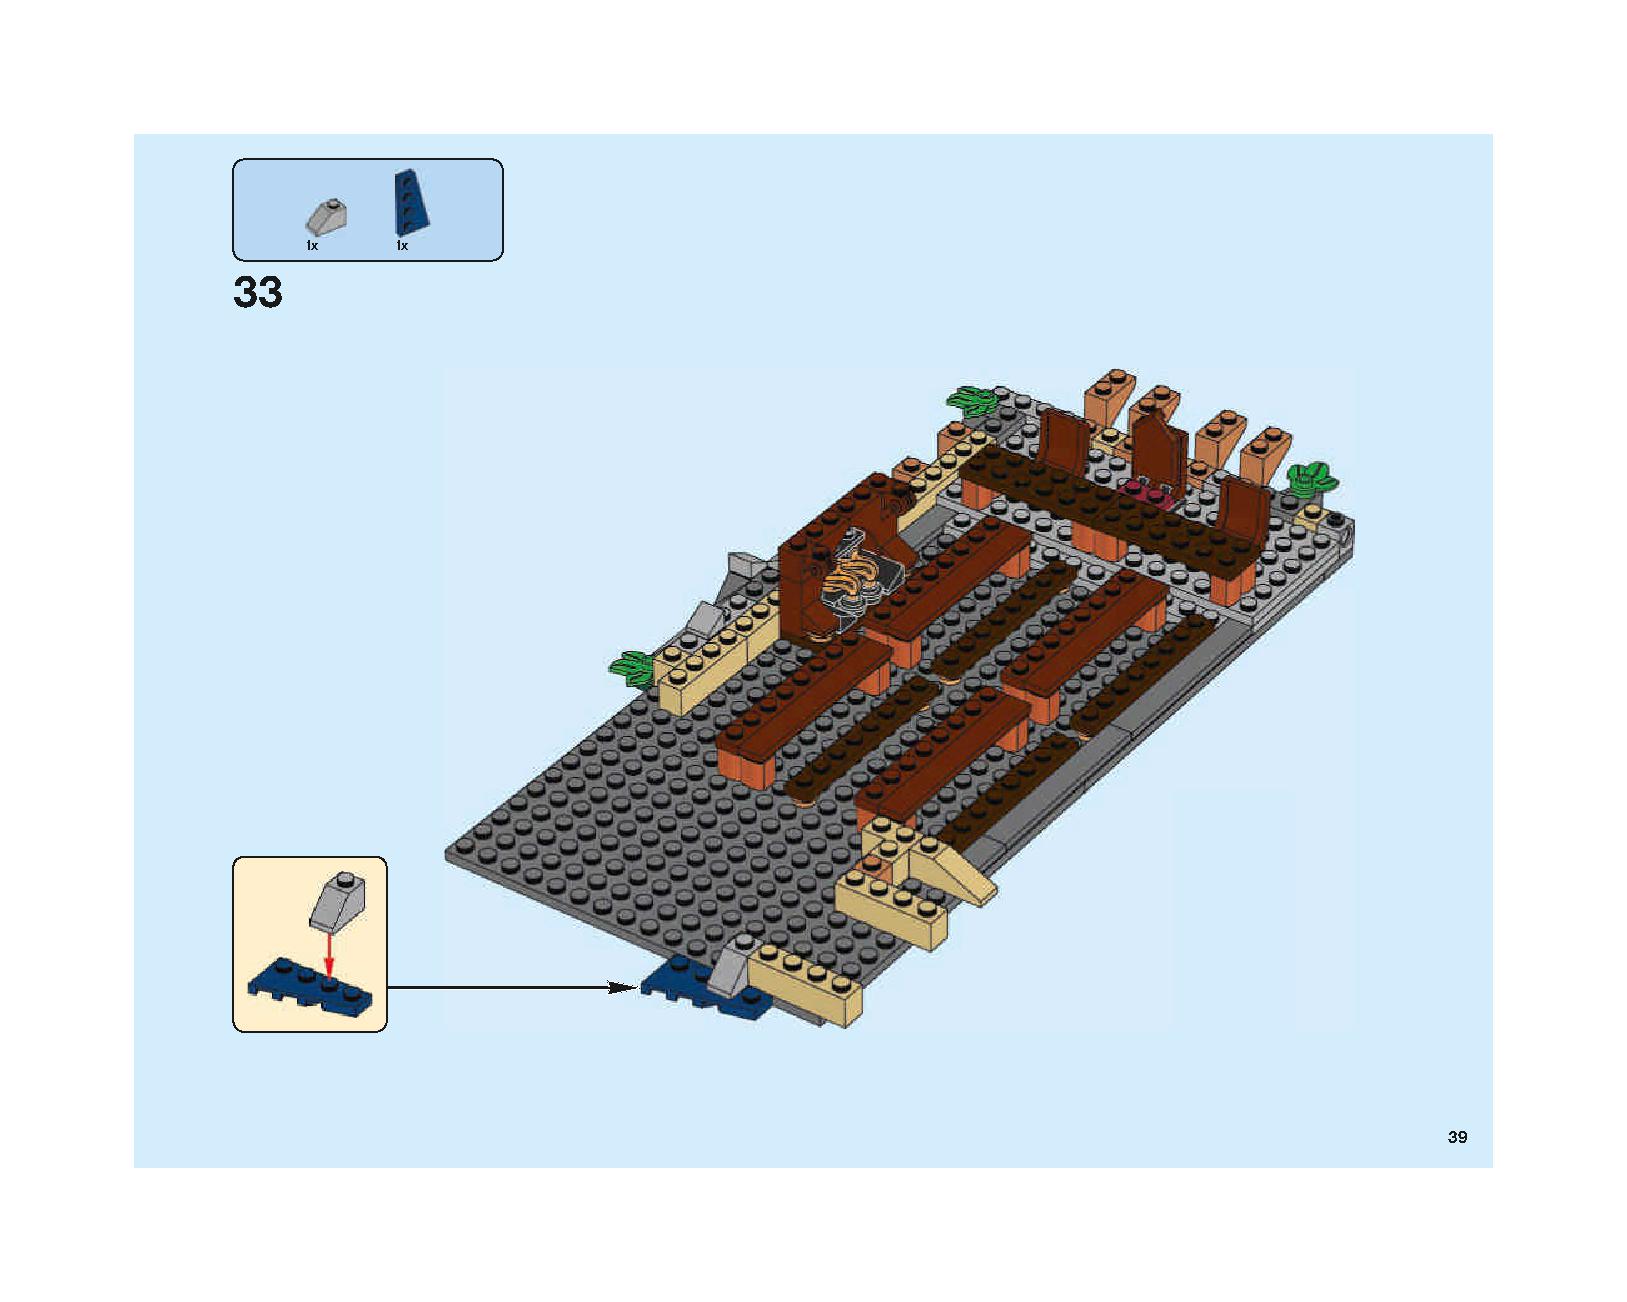 ホグワーツの大広間 75954 レゴの商品情報 レゴの説明書・組立方法 39 page